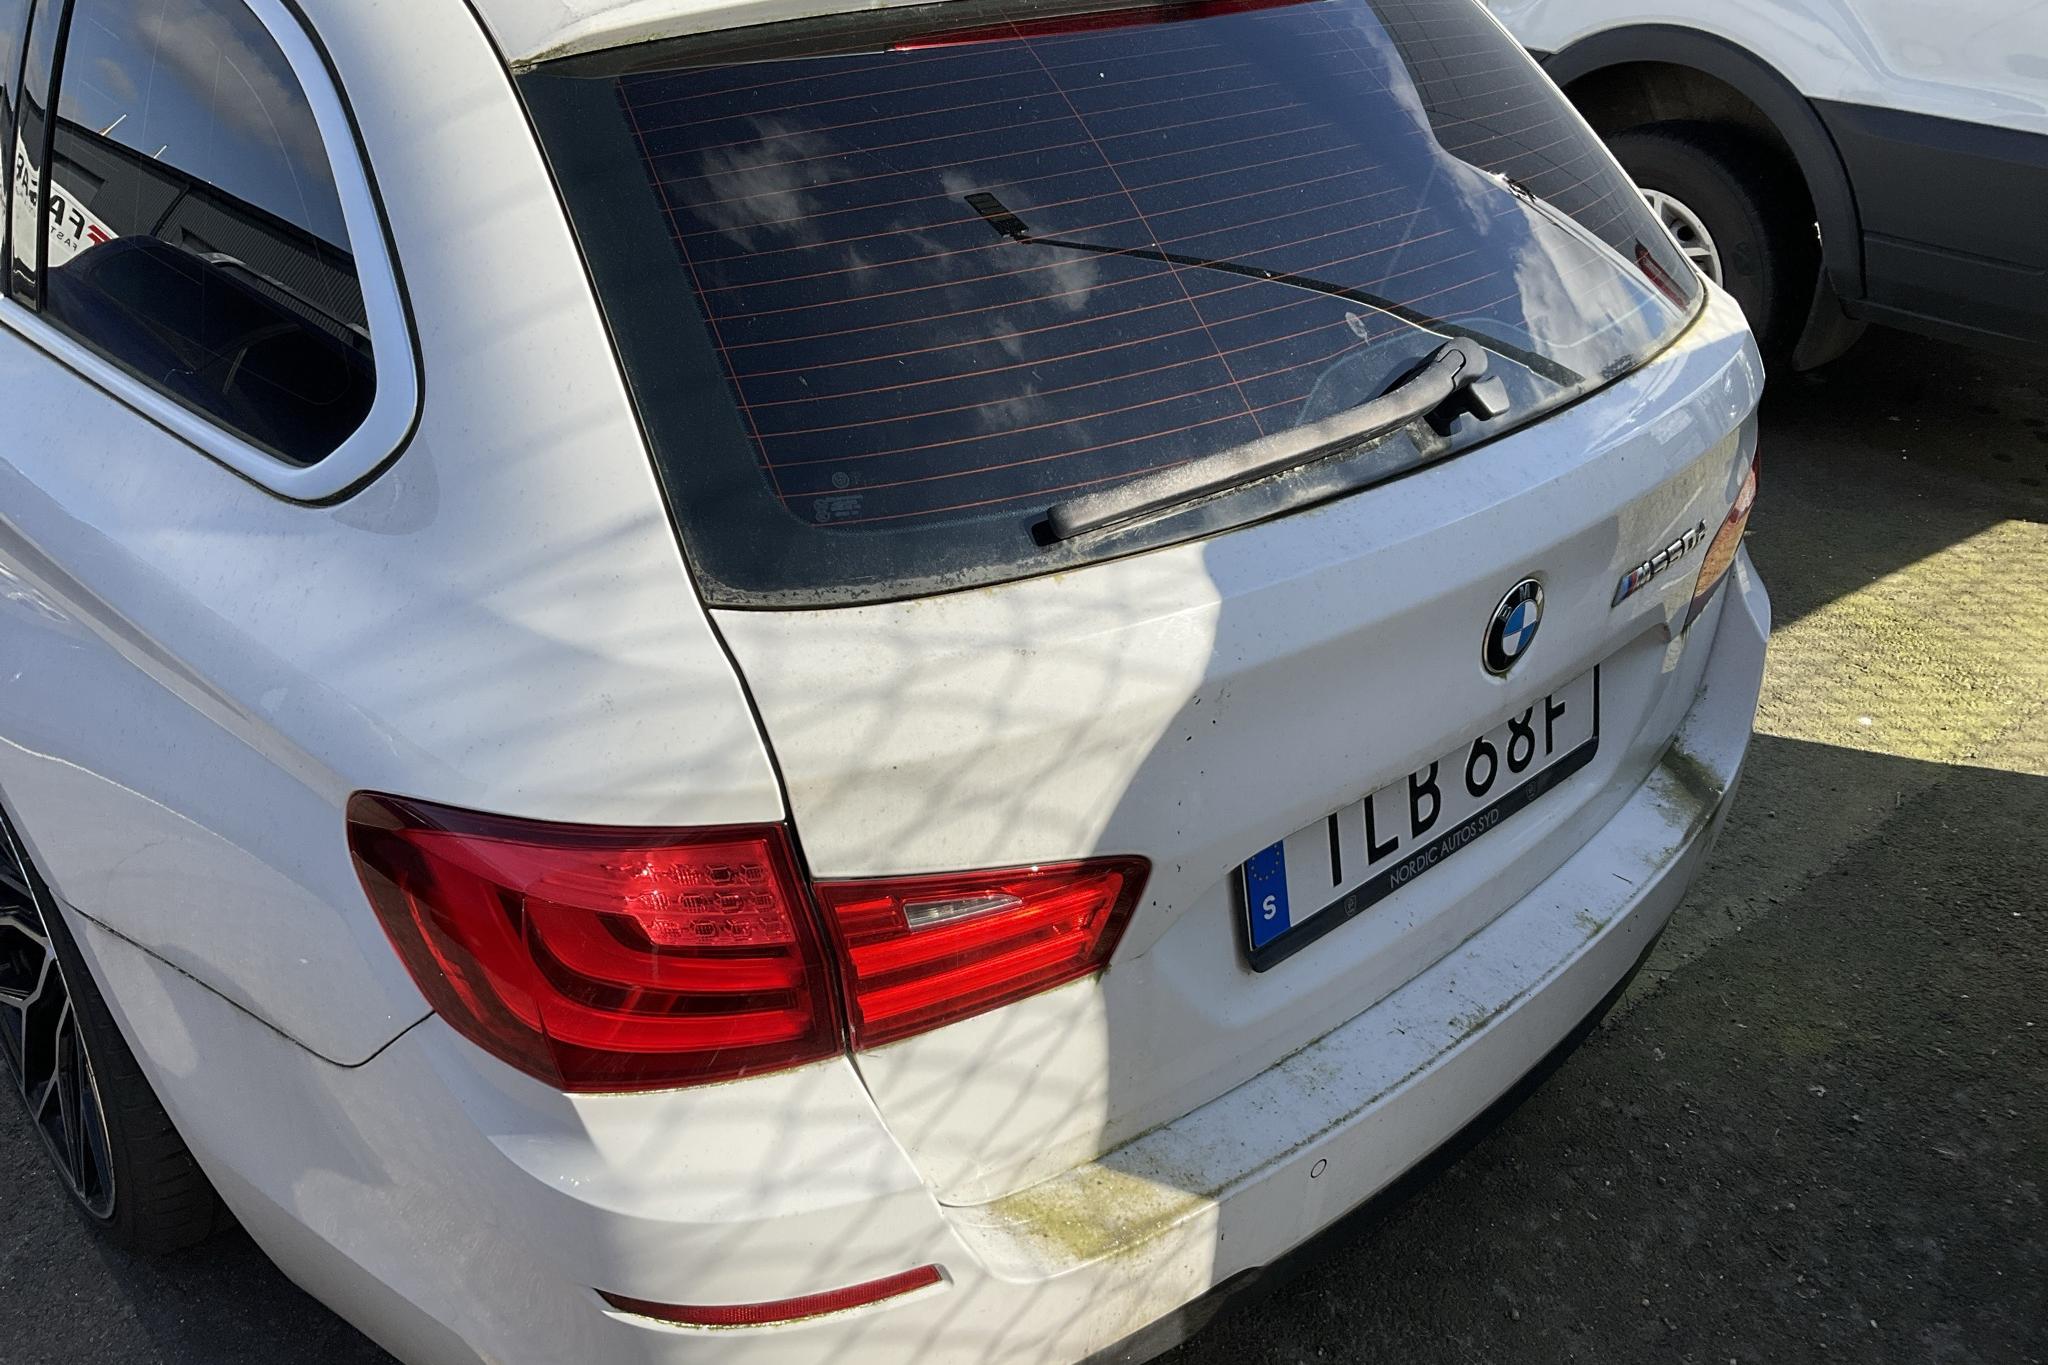 BMW M550d xDrive Touring, F11 (381hk) - 118 250 km - Automatic - white - 2012